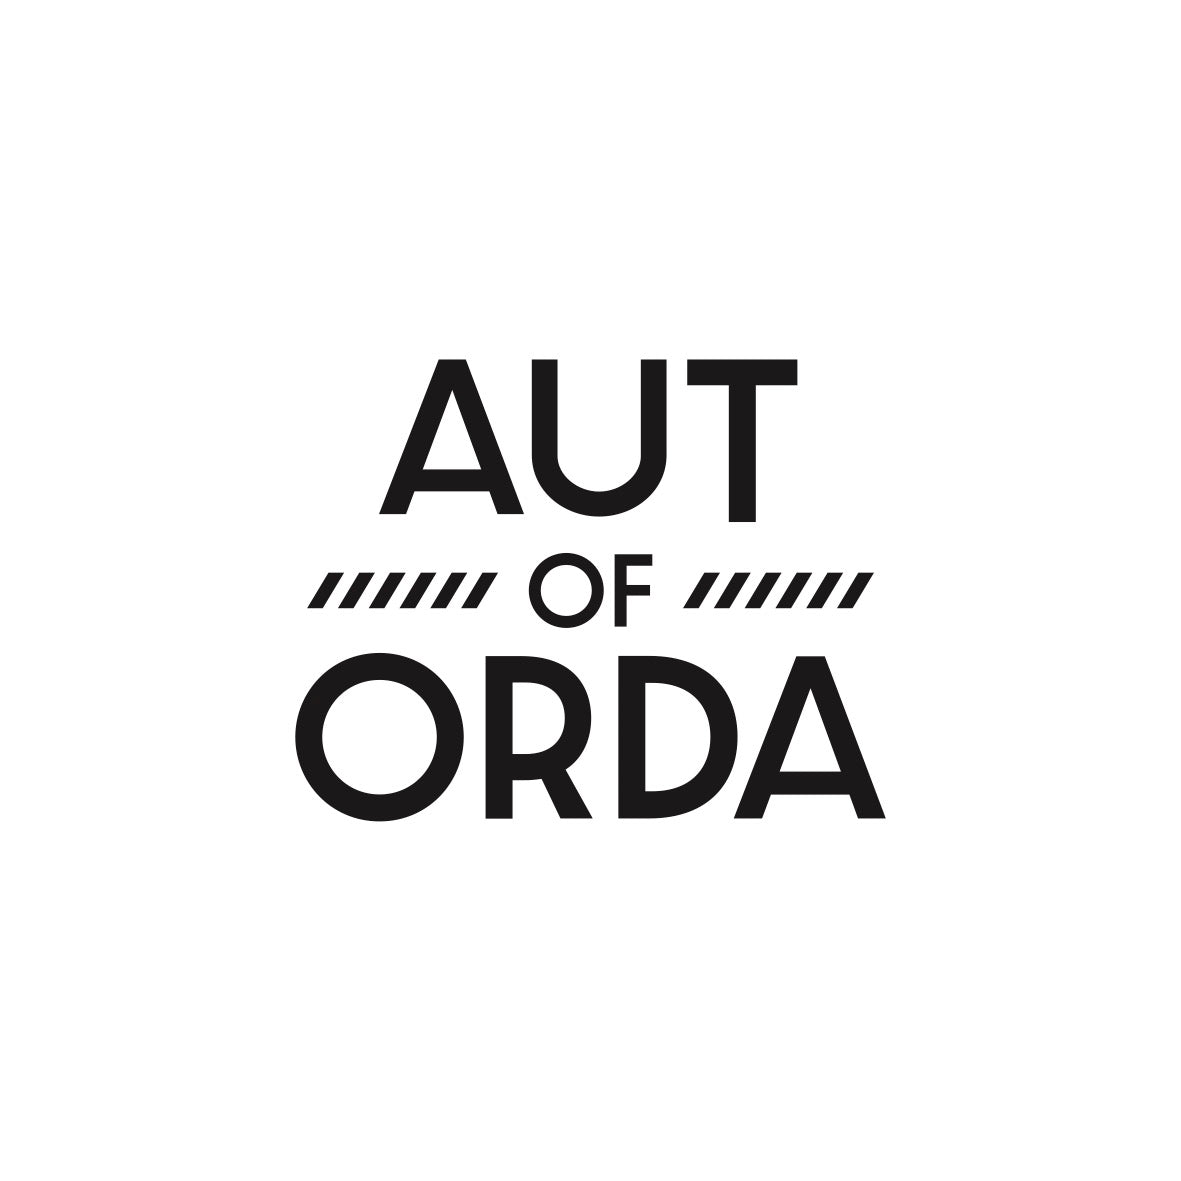 AUT of ORDA, "Ich hol die Butter" Shirt